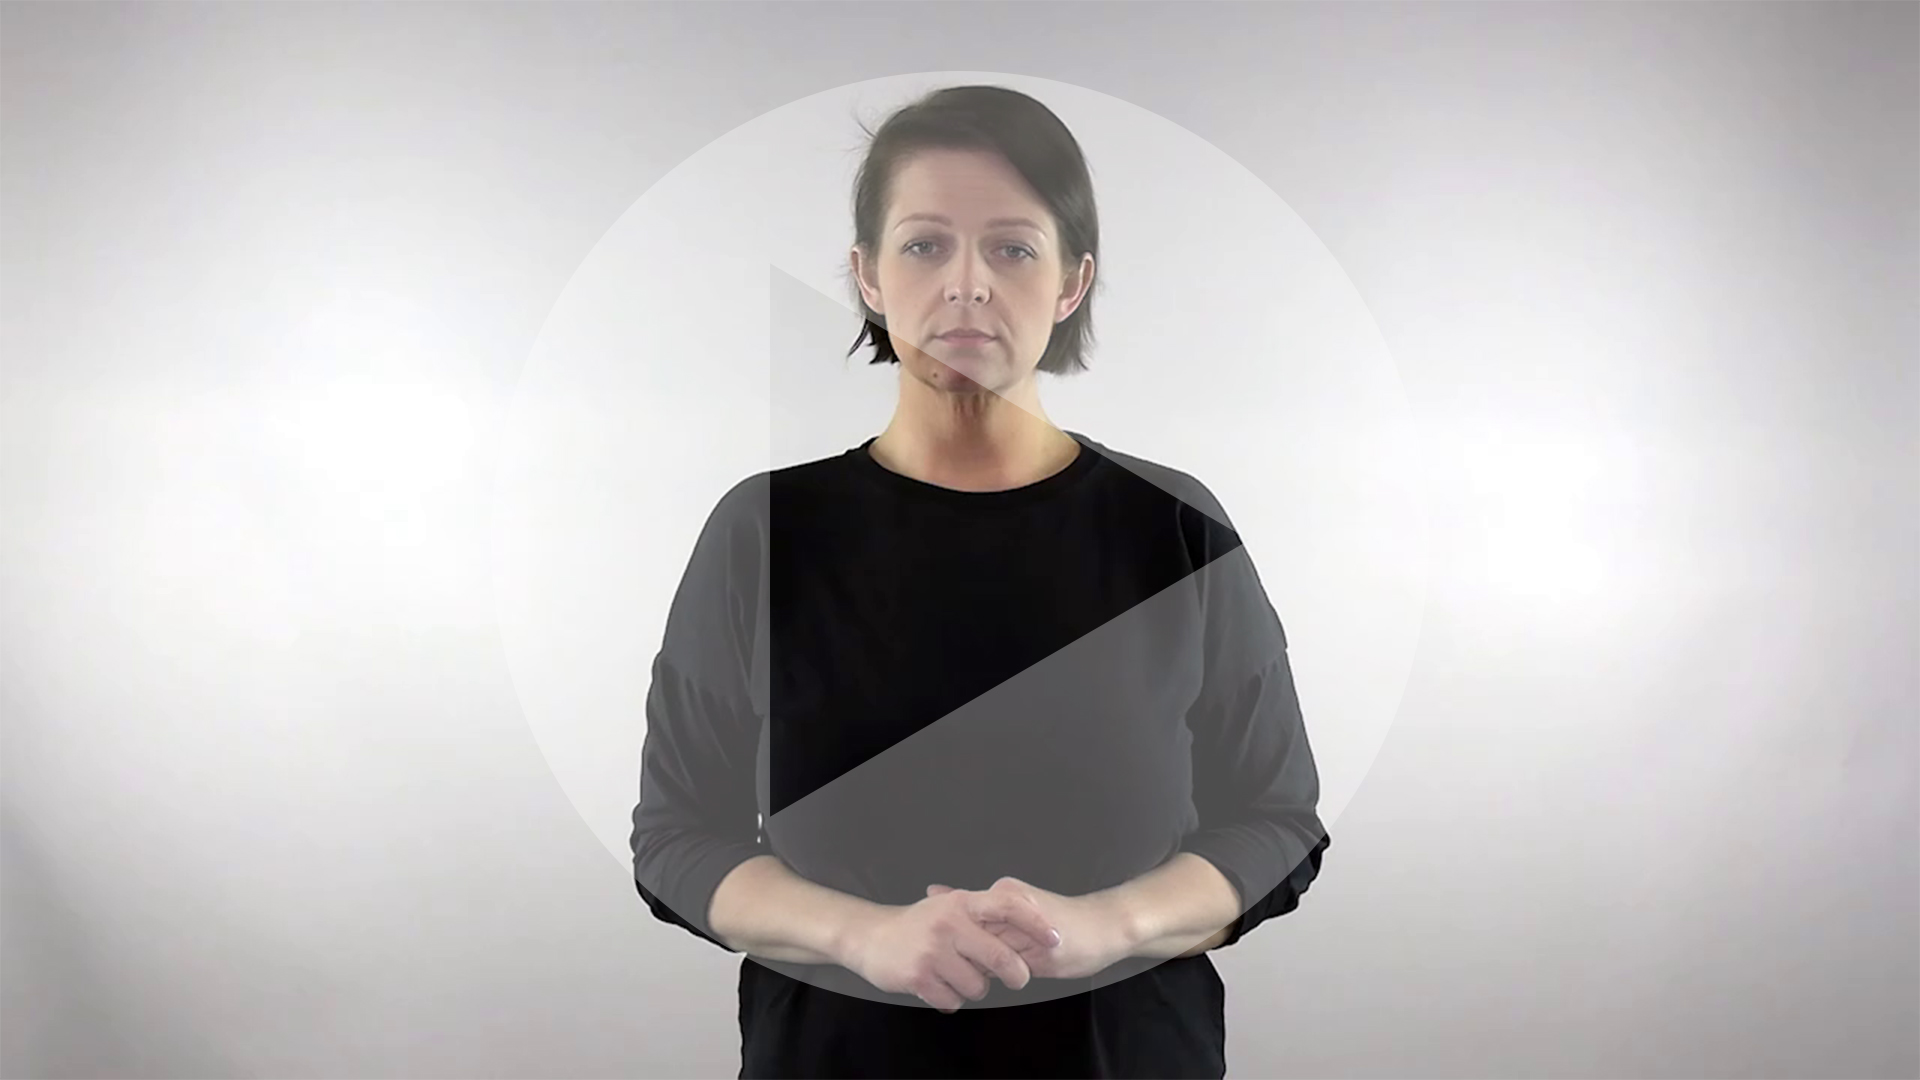 Kadr z nagrania przedstawiający tłumaczkę języka migowego z naniesionym symbolem odtwarzania wideo - trójkątem w kole